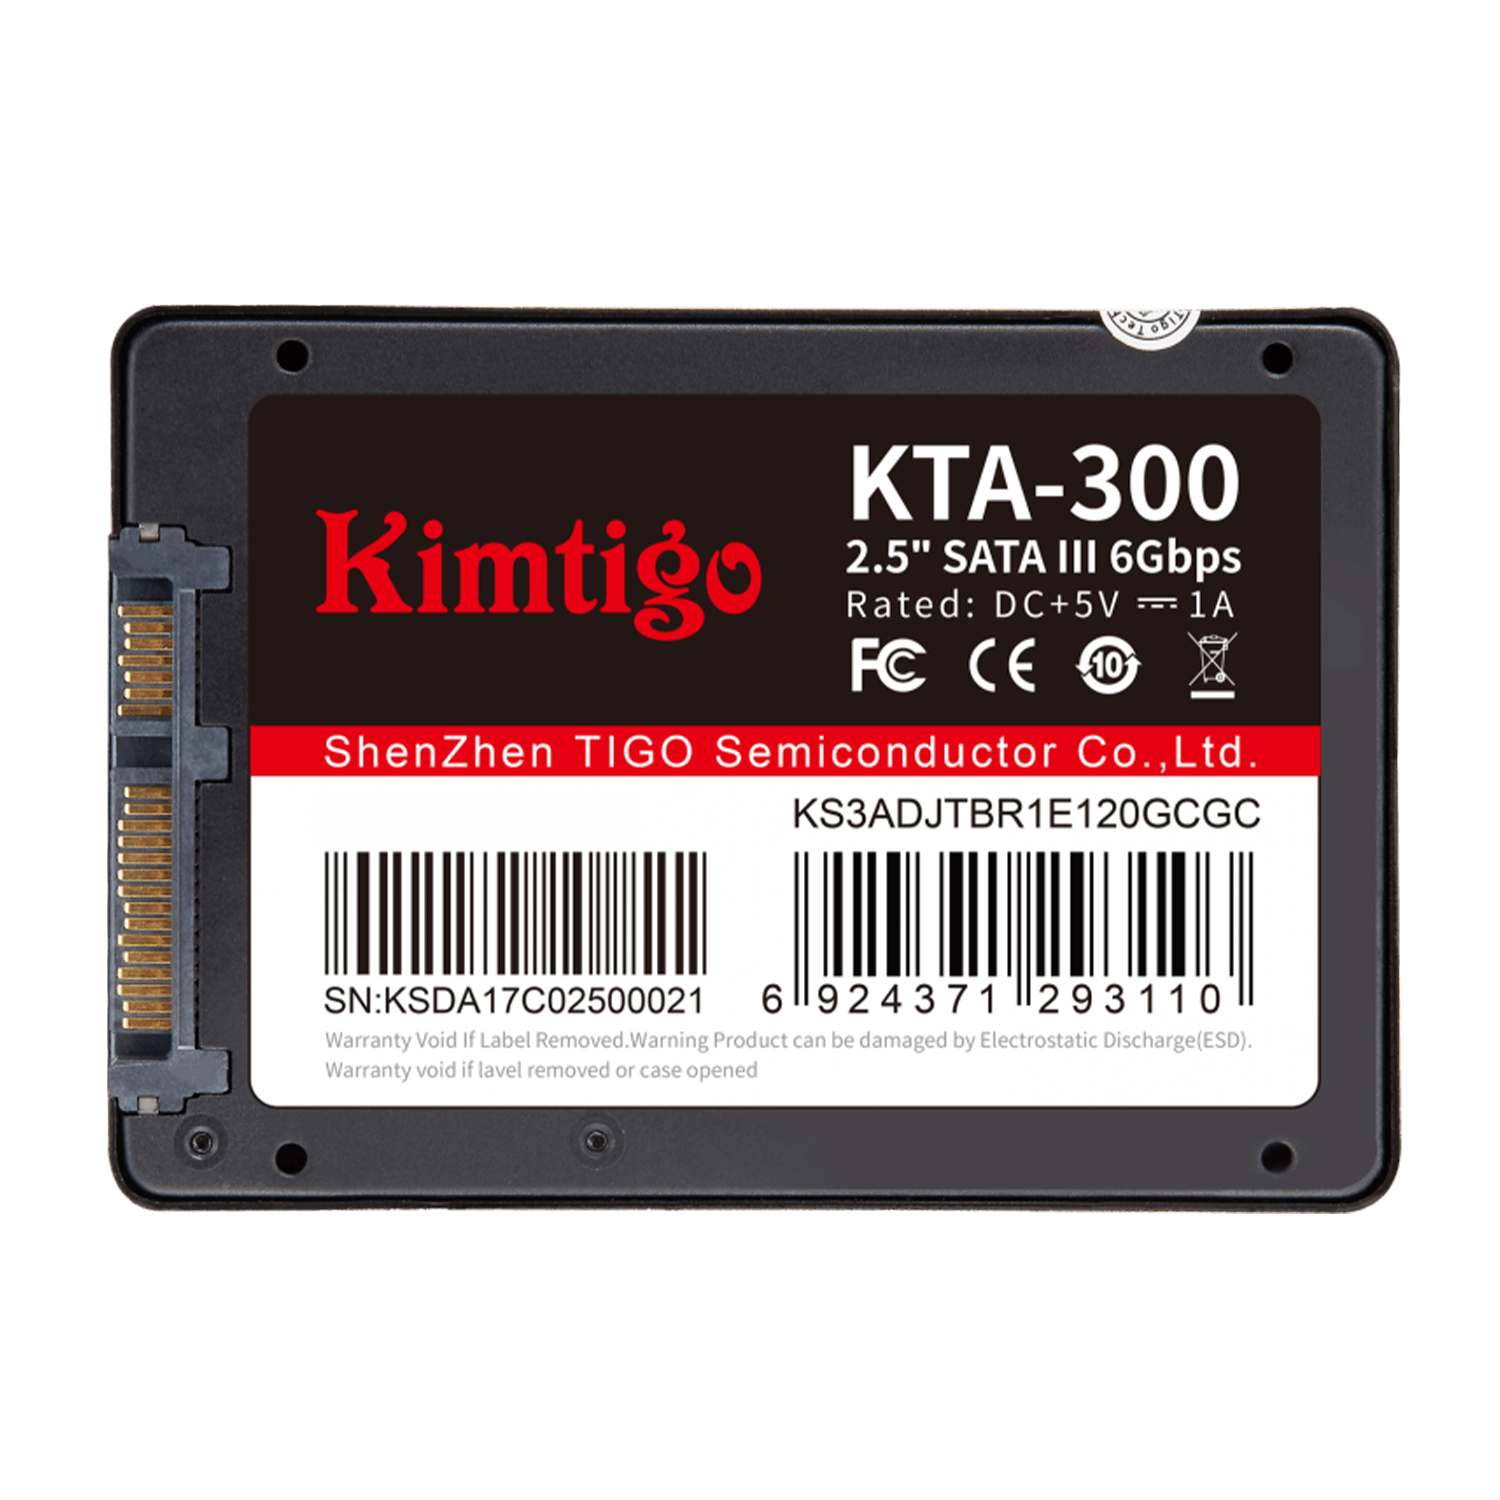 SSD KIMTIGO KTA-300 2.5 SATA III 240GB (2)